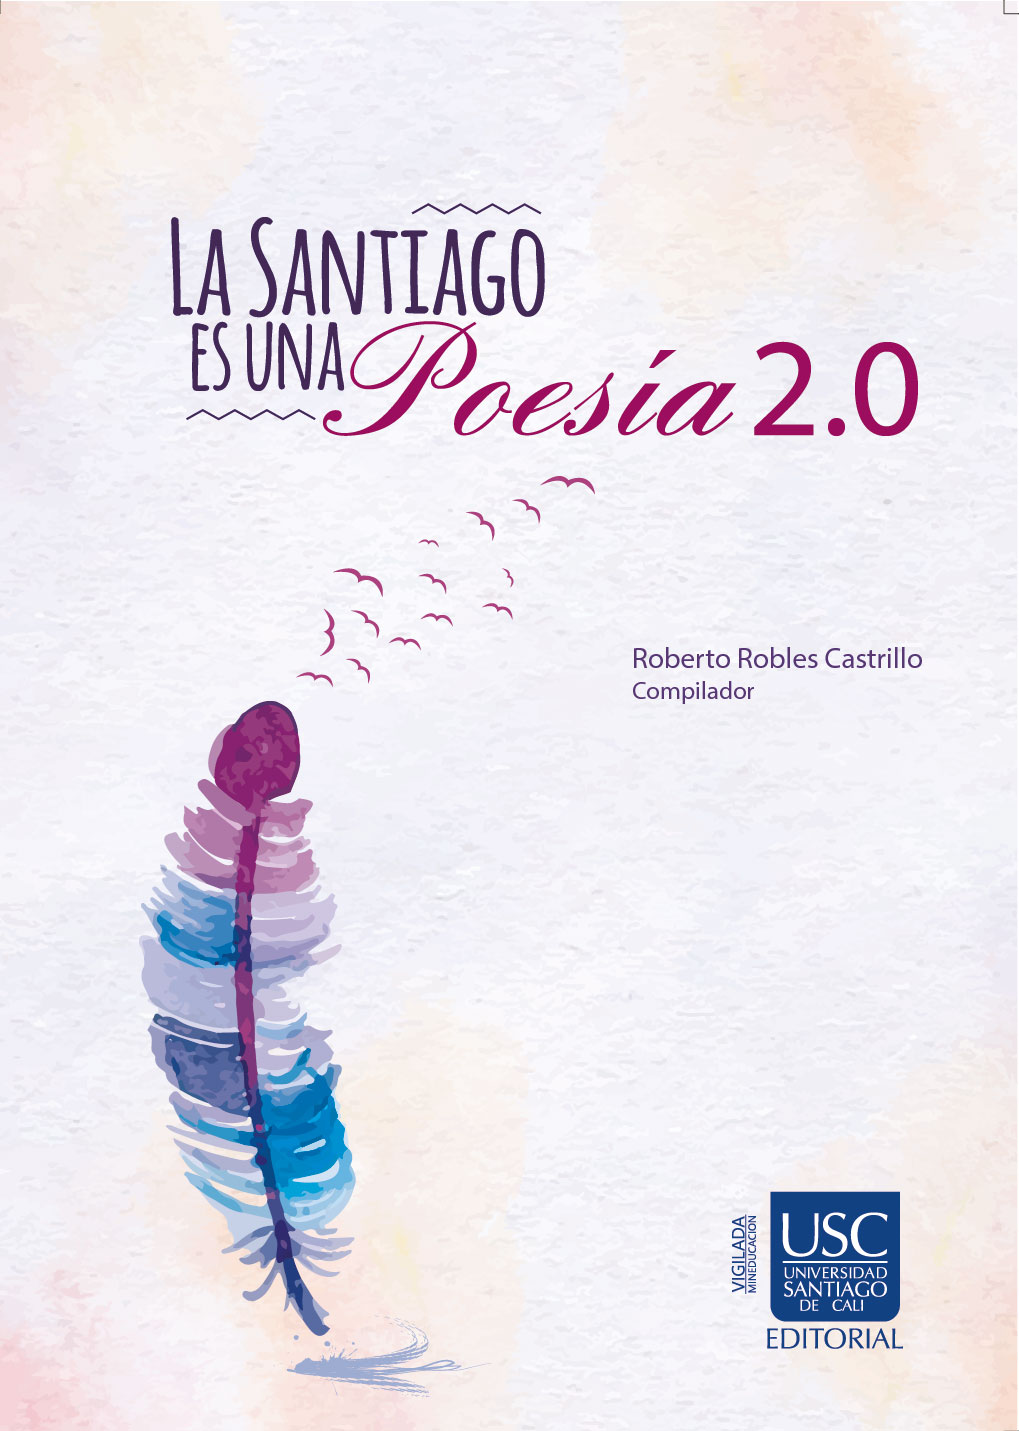 Imagen de portada del libro La Santiago es una poesía 2.0